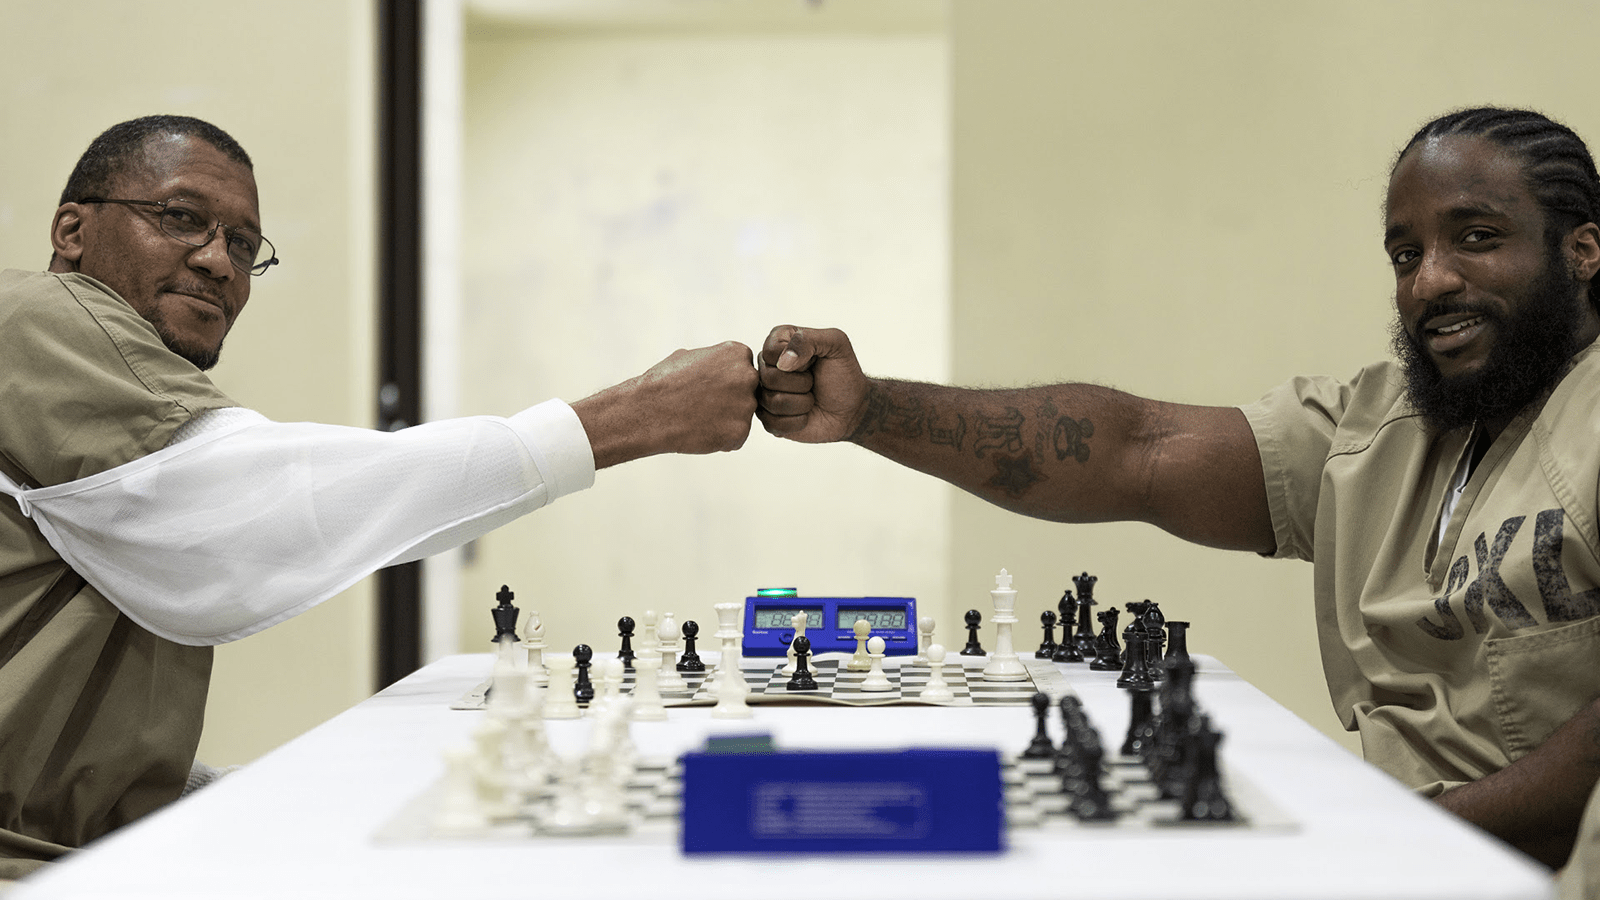 Somos apoiadores do Araraquara Chess Open. Bora jogar xadrez?